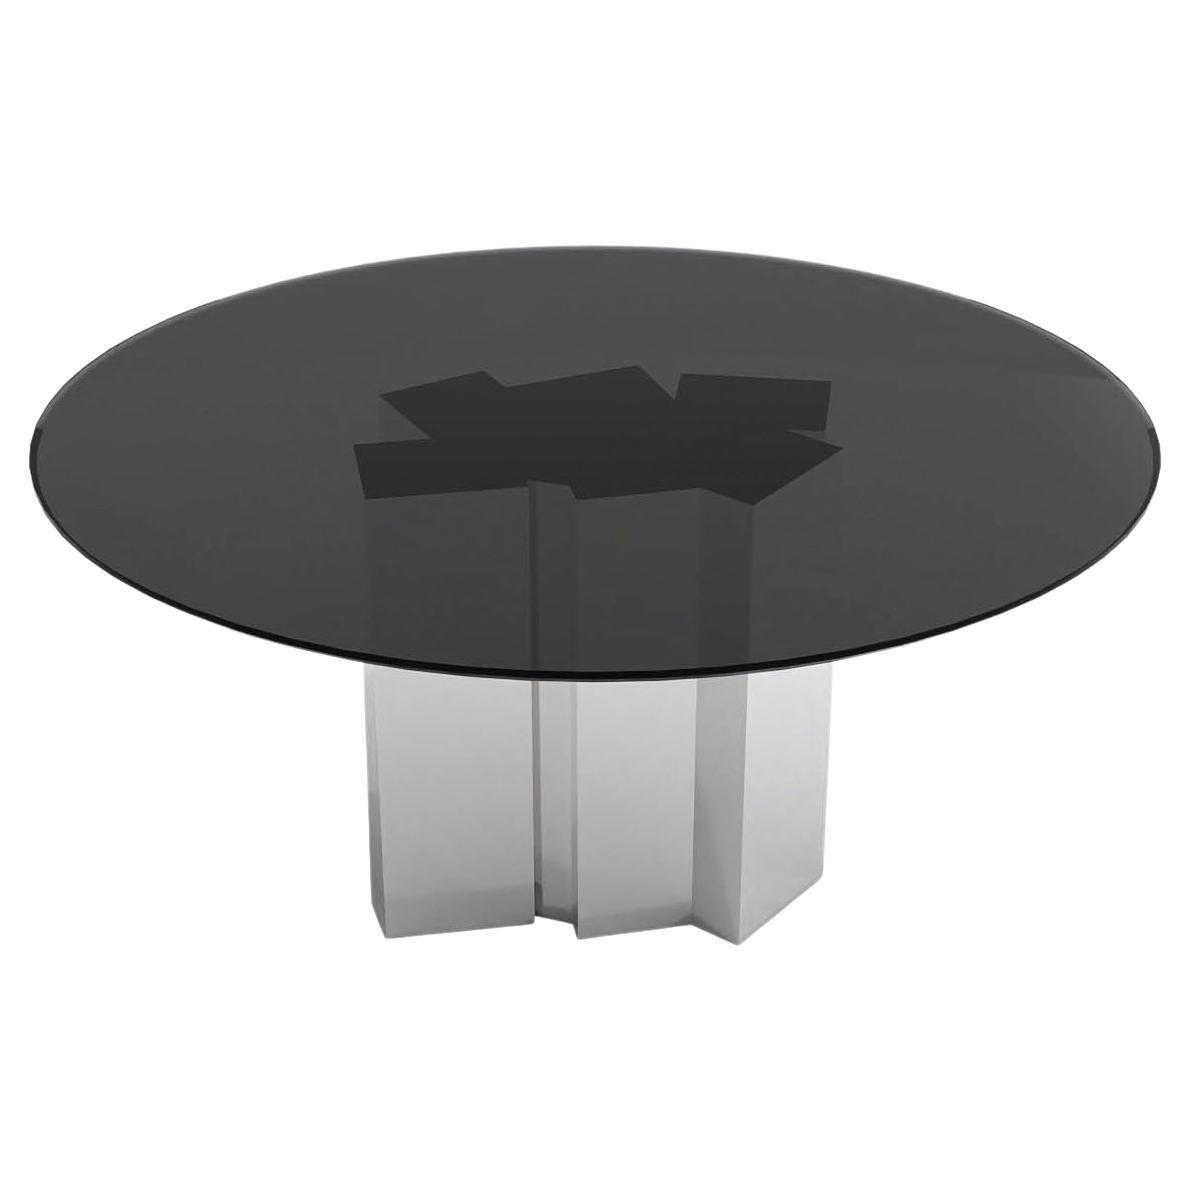 Zeitgenössischer runder Esstisch aus schwarzem Glas und hochglanzpoliertem Edelstahl